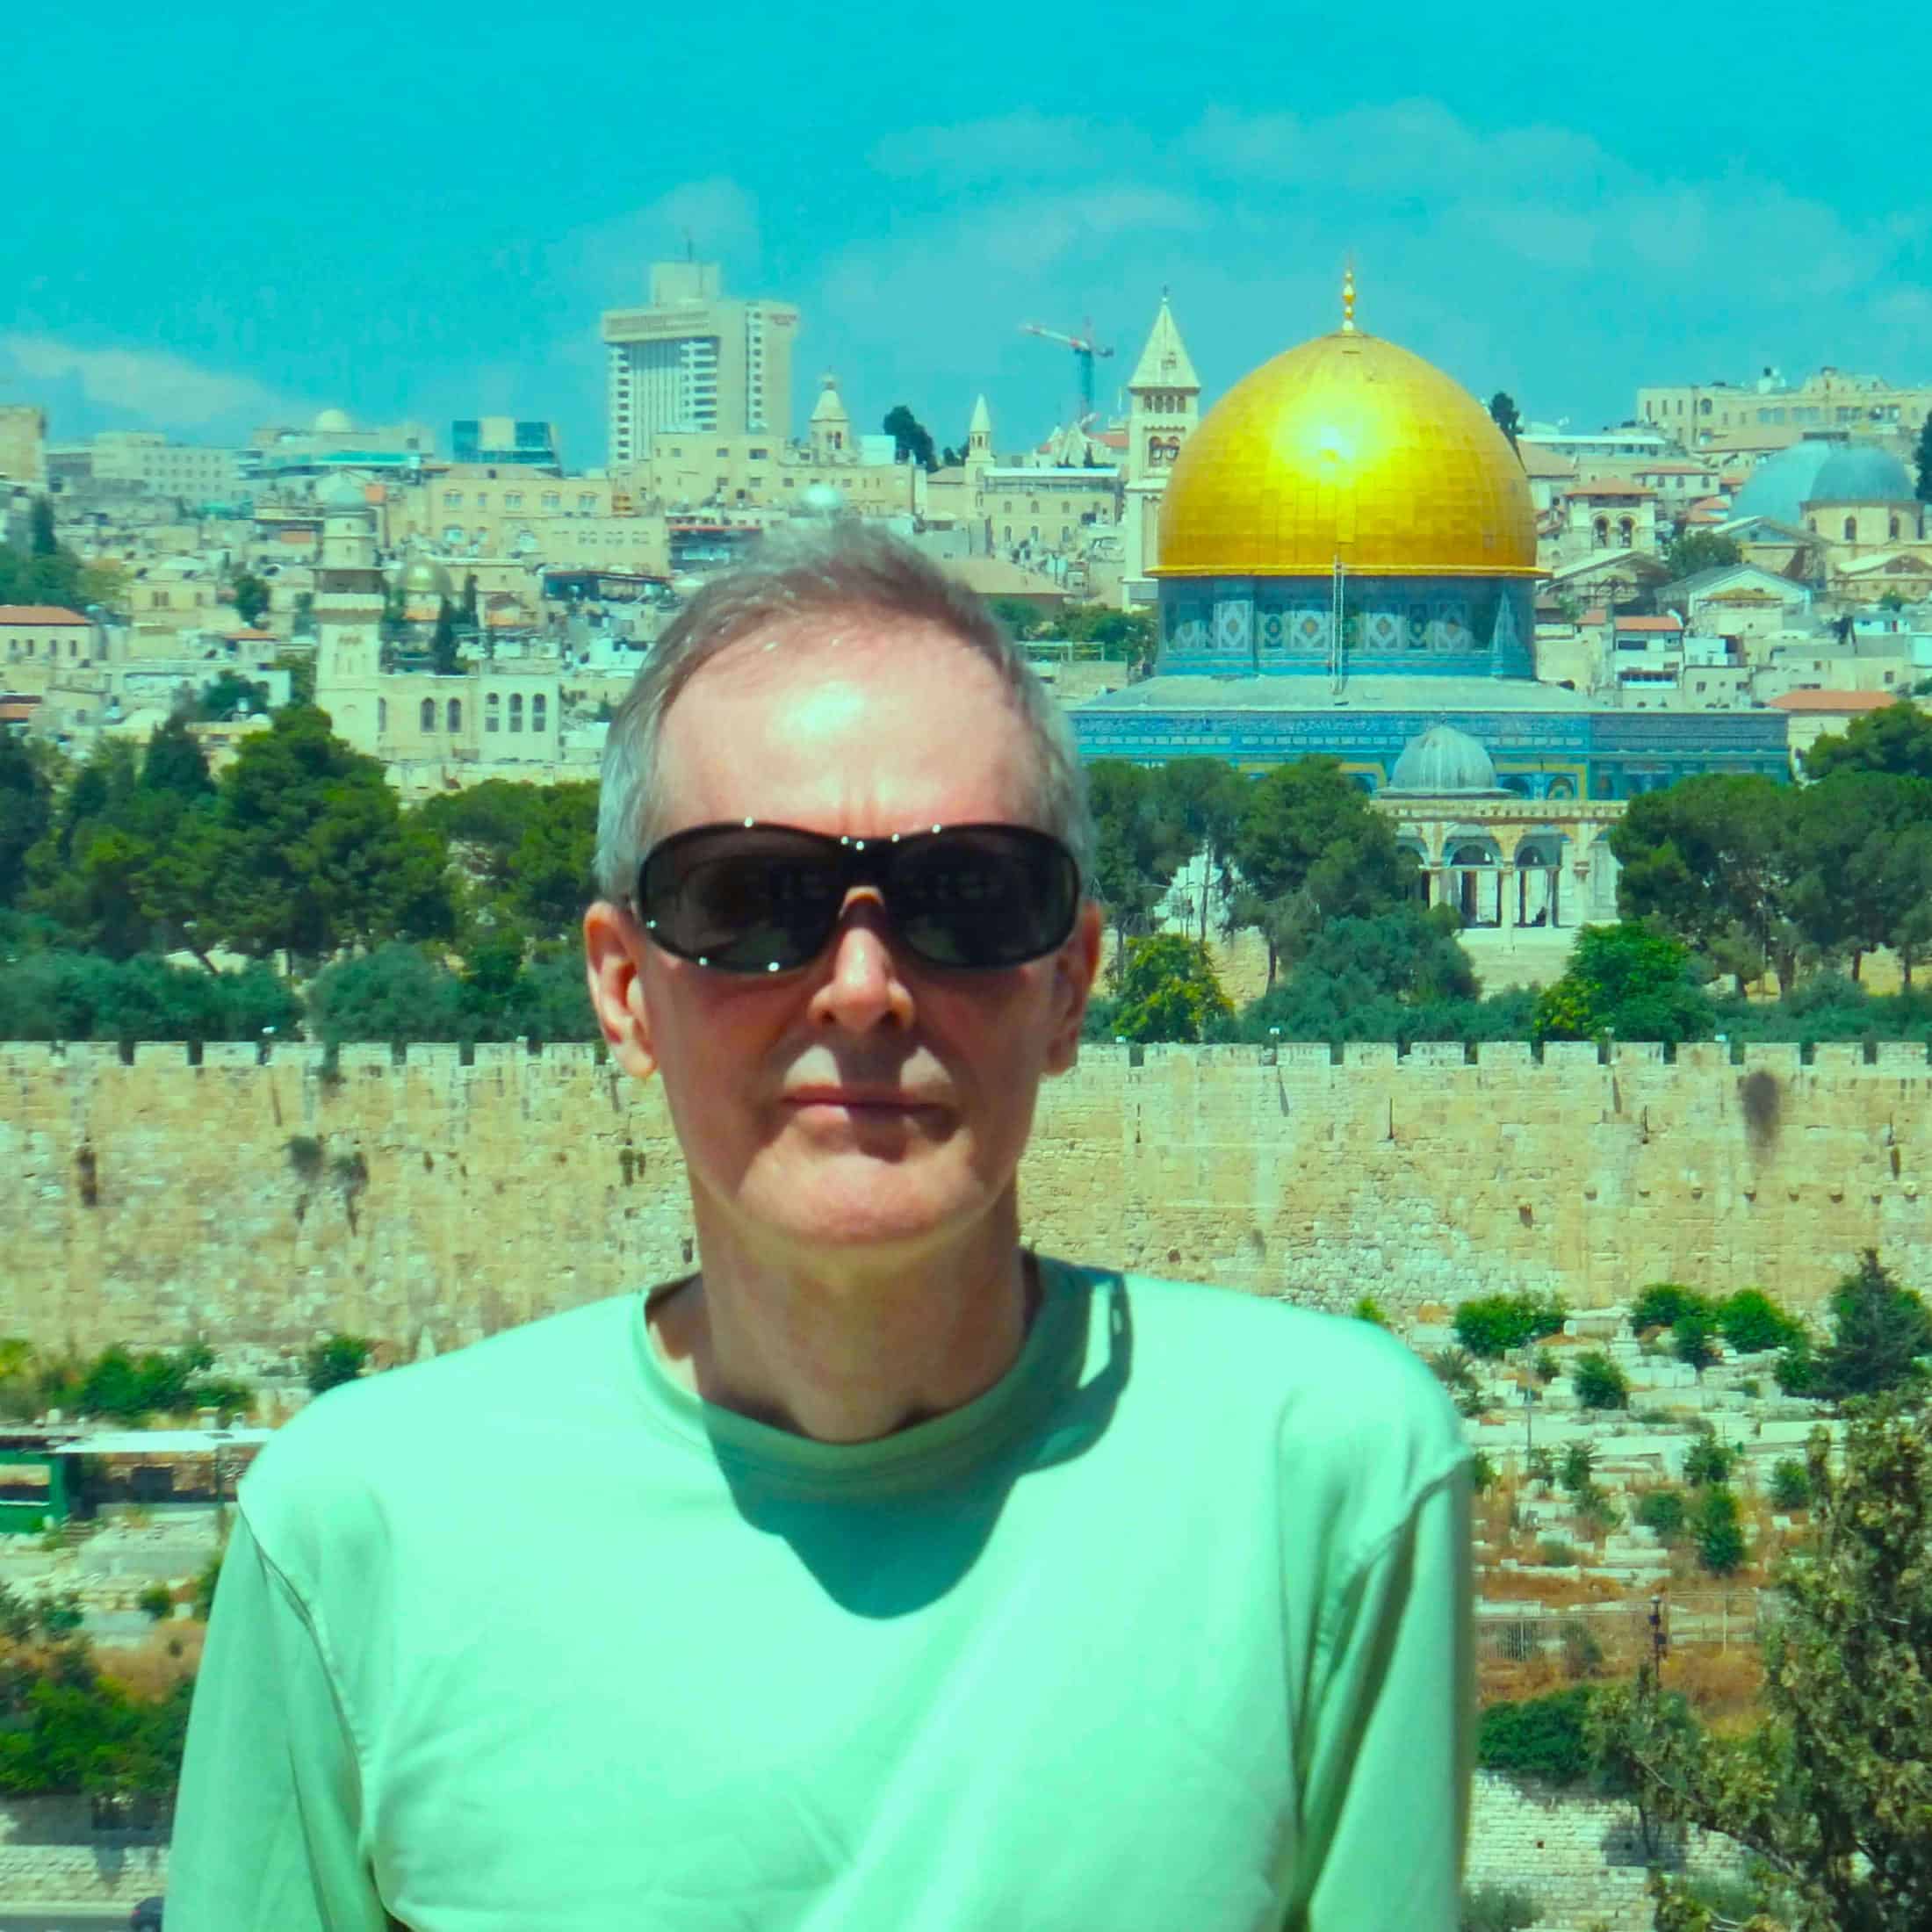 Randy Ingermanson in Jerusalem